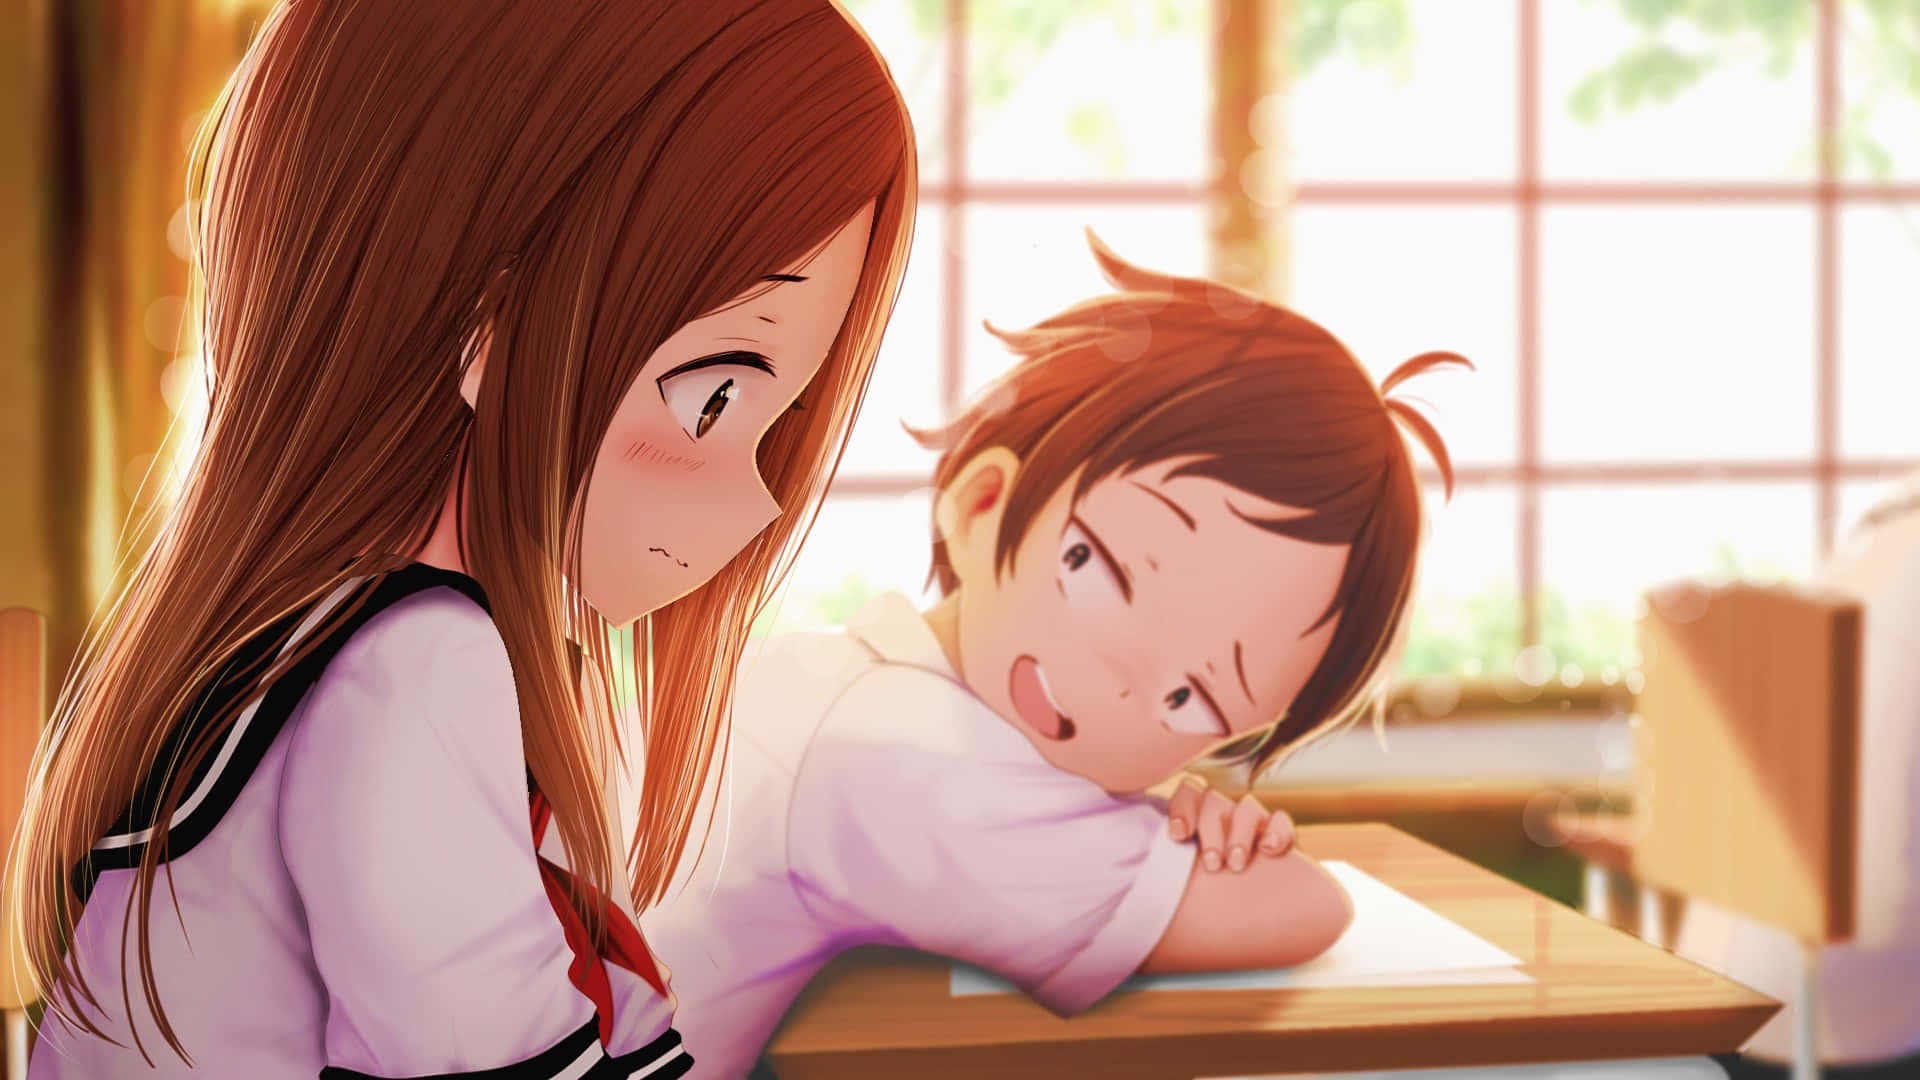 Anime School Girl Cute Takagi Wallpaper